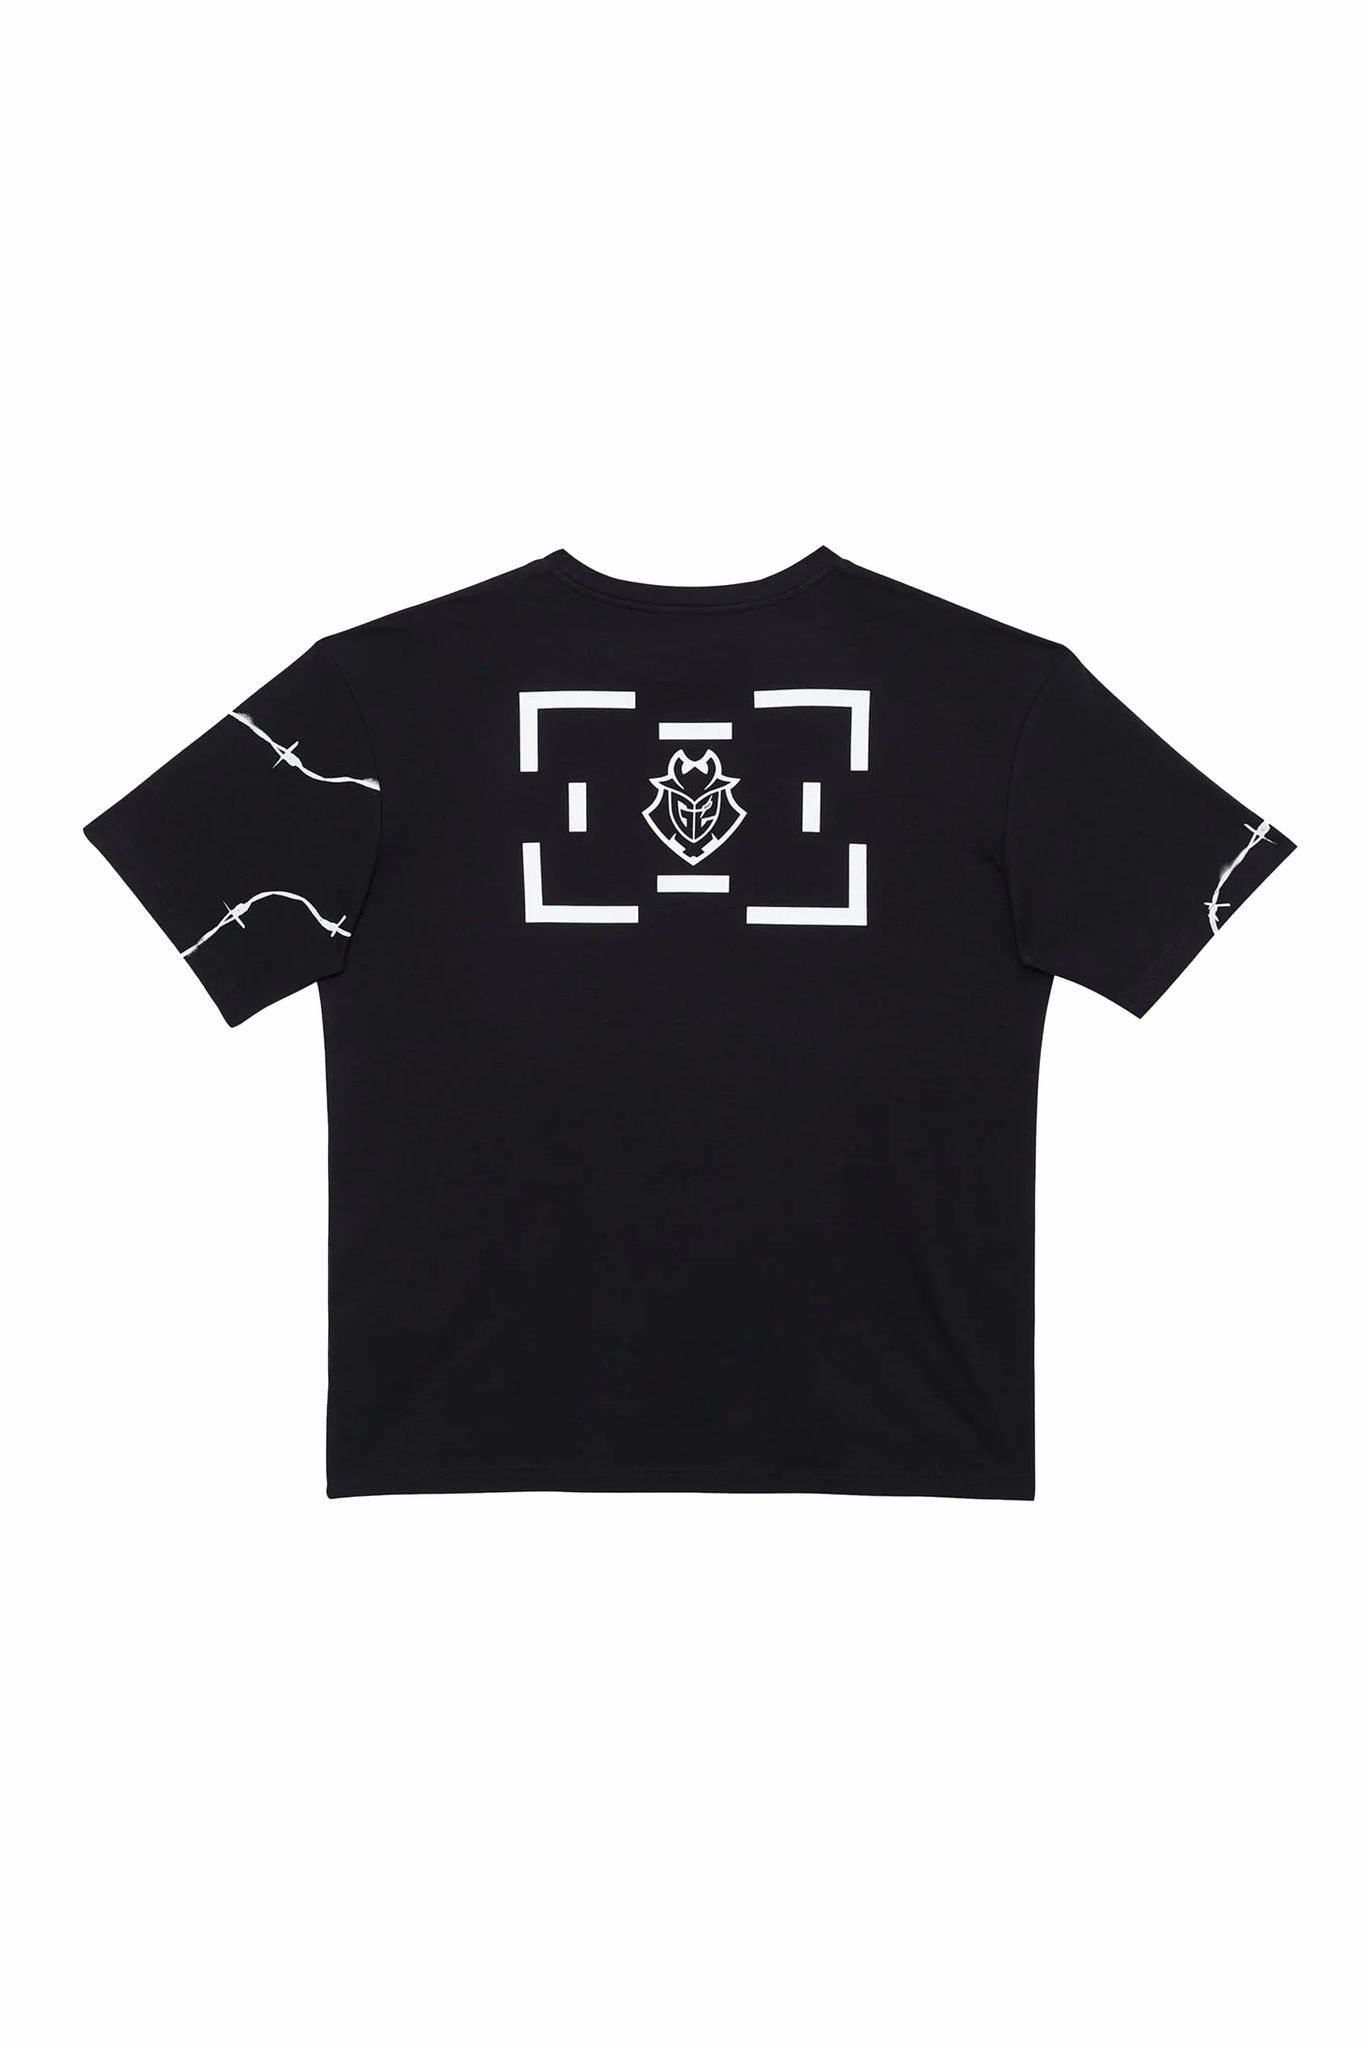 G2 x LB Black T-Shirt